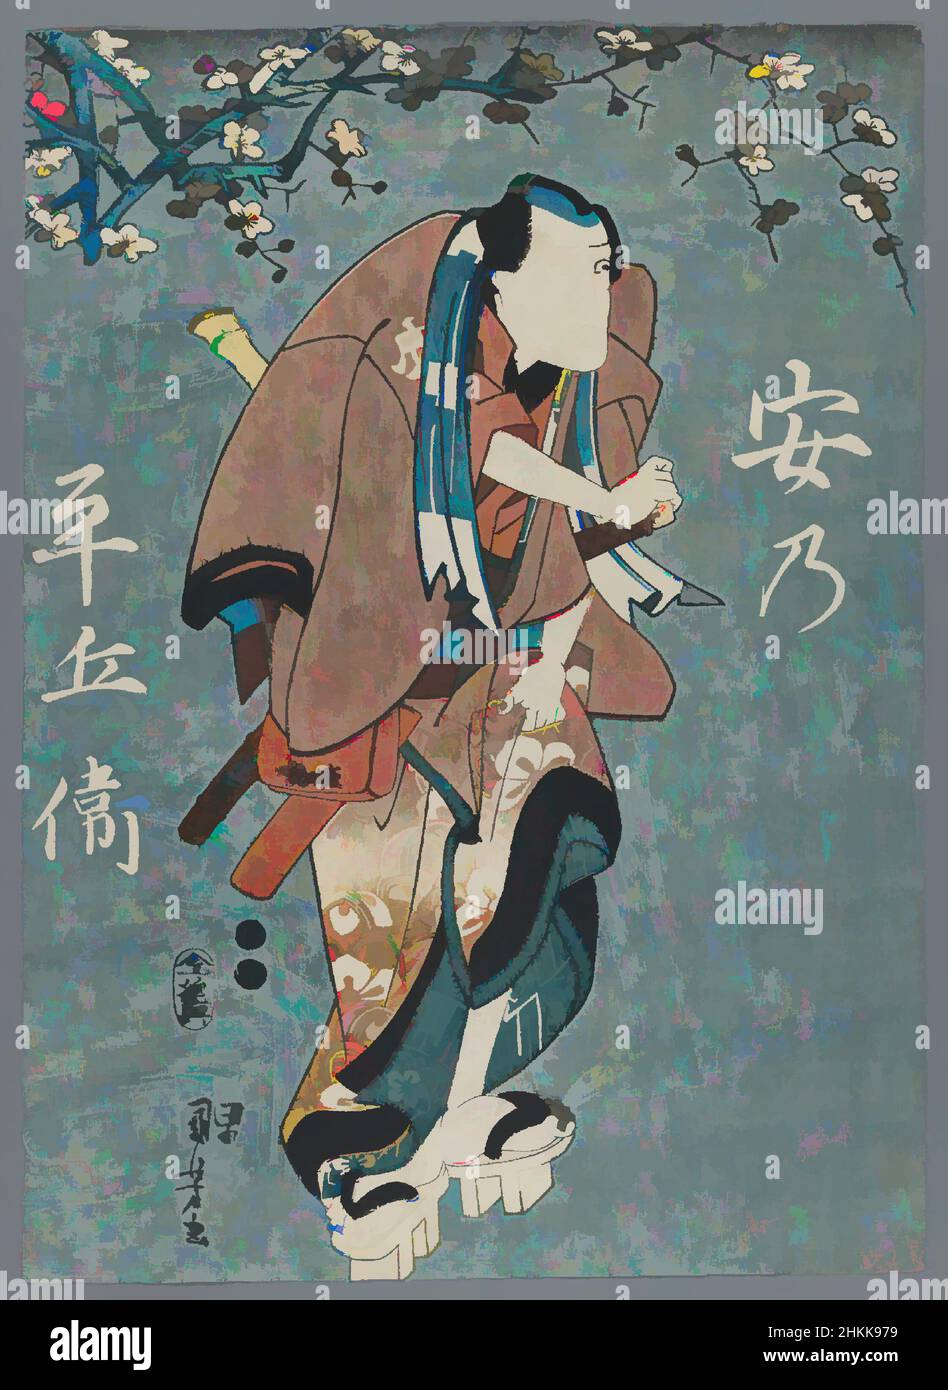 Kunst inspiriert von Schauspielern wie The Five Manly Men: Nakamura Utaemon IV als Hotei Ichiemon, Ichikawa Kuzo II als No Heibei, Sawamura Tossho I als Gokuin Sen'emon, Ichimura Uzaemon XII als Karigane Bunshichi und Ichikawa Ebizo V als Kaminari Shoku, Utagawa Kuniyoshi, Japanisch, 1798-1861, Klassische Werke mit einem Schuss moderner Moderne. Formen, Farbe und Wert, auffällige visuelle Wirkung auf Kunst. Emotionen durch Freiheit von Kunstwerken auf zeitgemäße Weise. Eine zeitlose Botschaft, die eine wild kreative neue Richtung verfolgt. Künstler, die sich dem digitalen Medium zuwenden und die Artotop NFT erschaffen Stockfoto